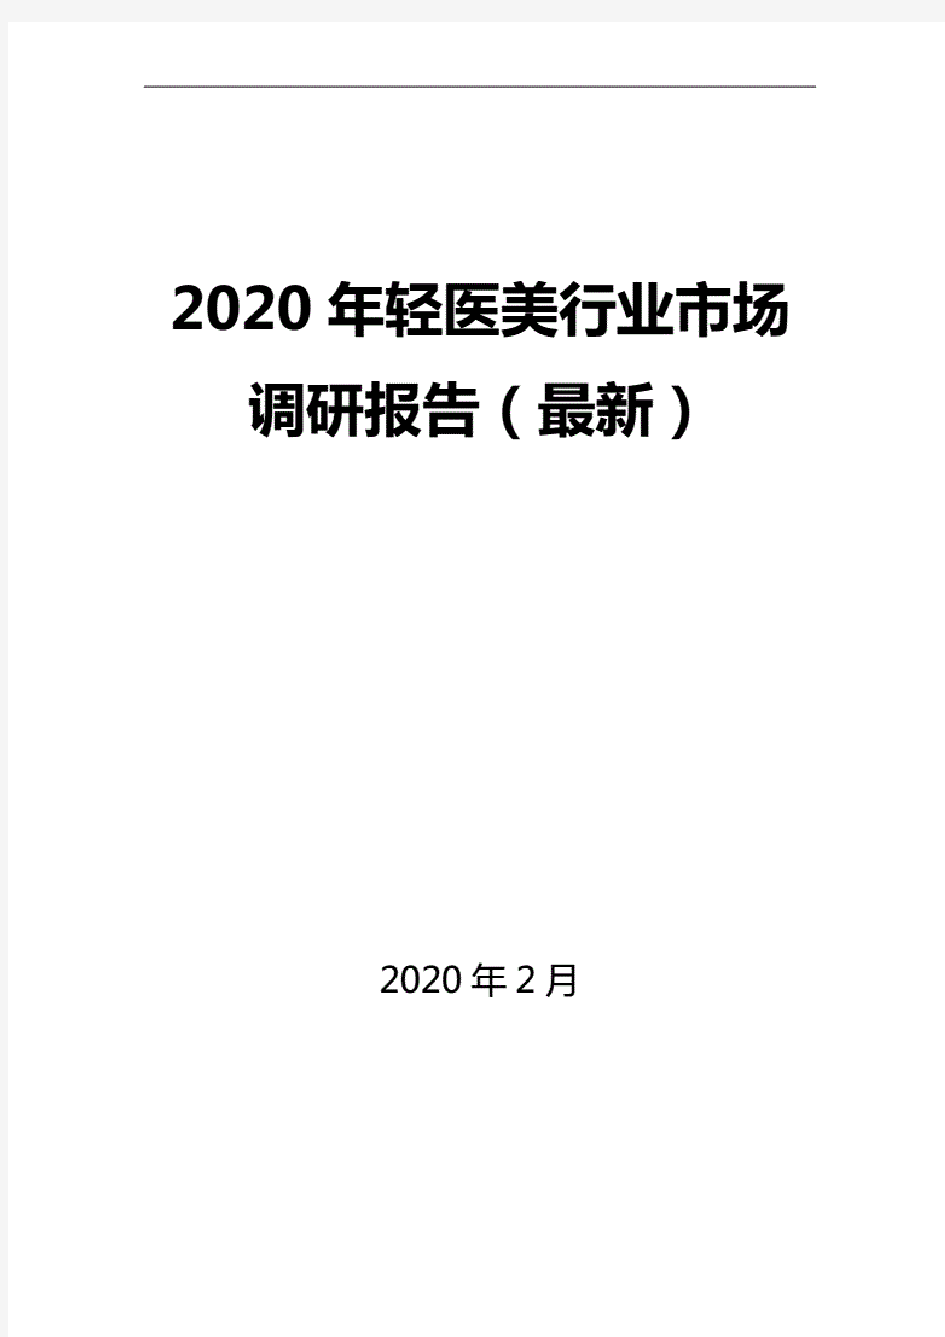 2020年轻医美行业市场调研报告(最新).